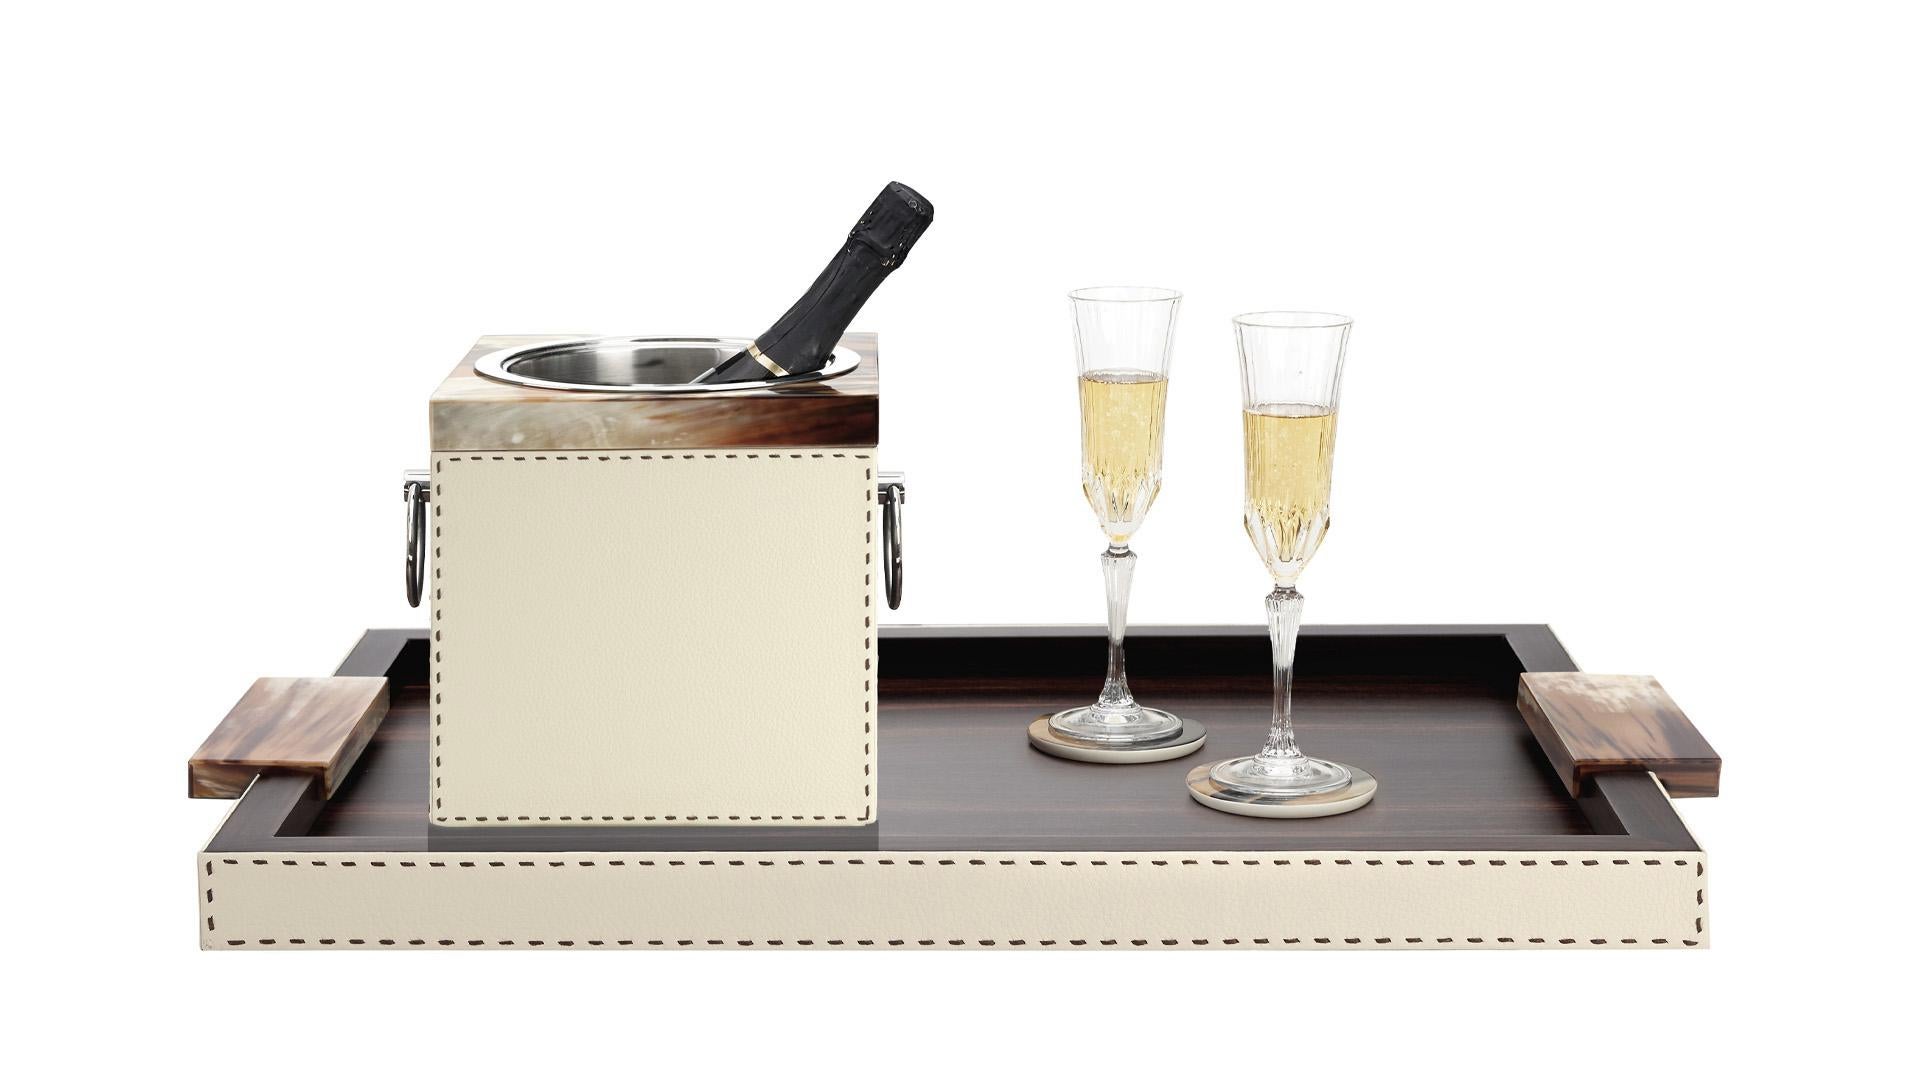 Rafraîchissez votre bouteille de champagne préférée dans notre seau Nives, un élément élégant pour votre table ou votre buffet. Associant des matériaux nobles, le design se distingue par un bord unique en véritable Corno Italiano avec une finition